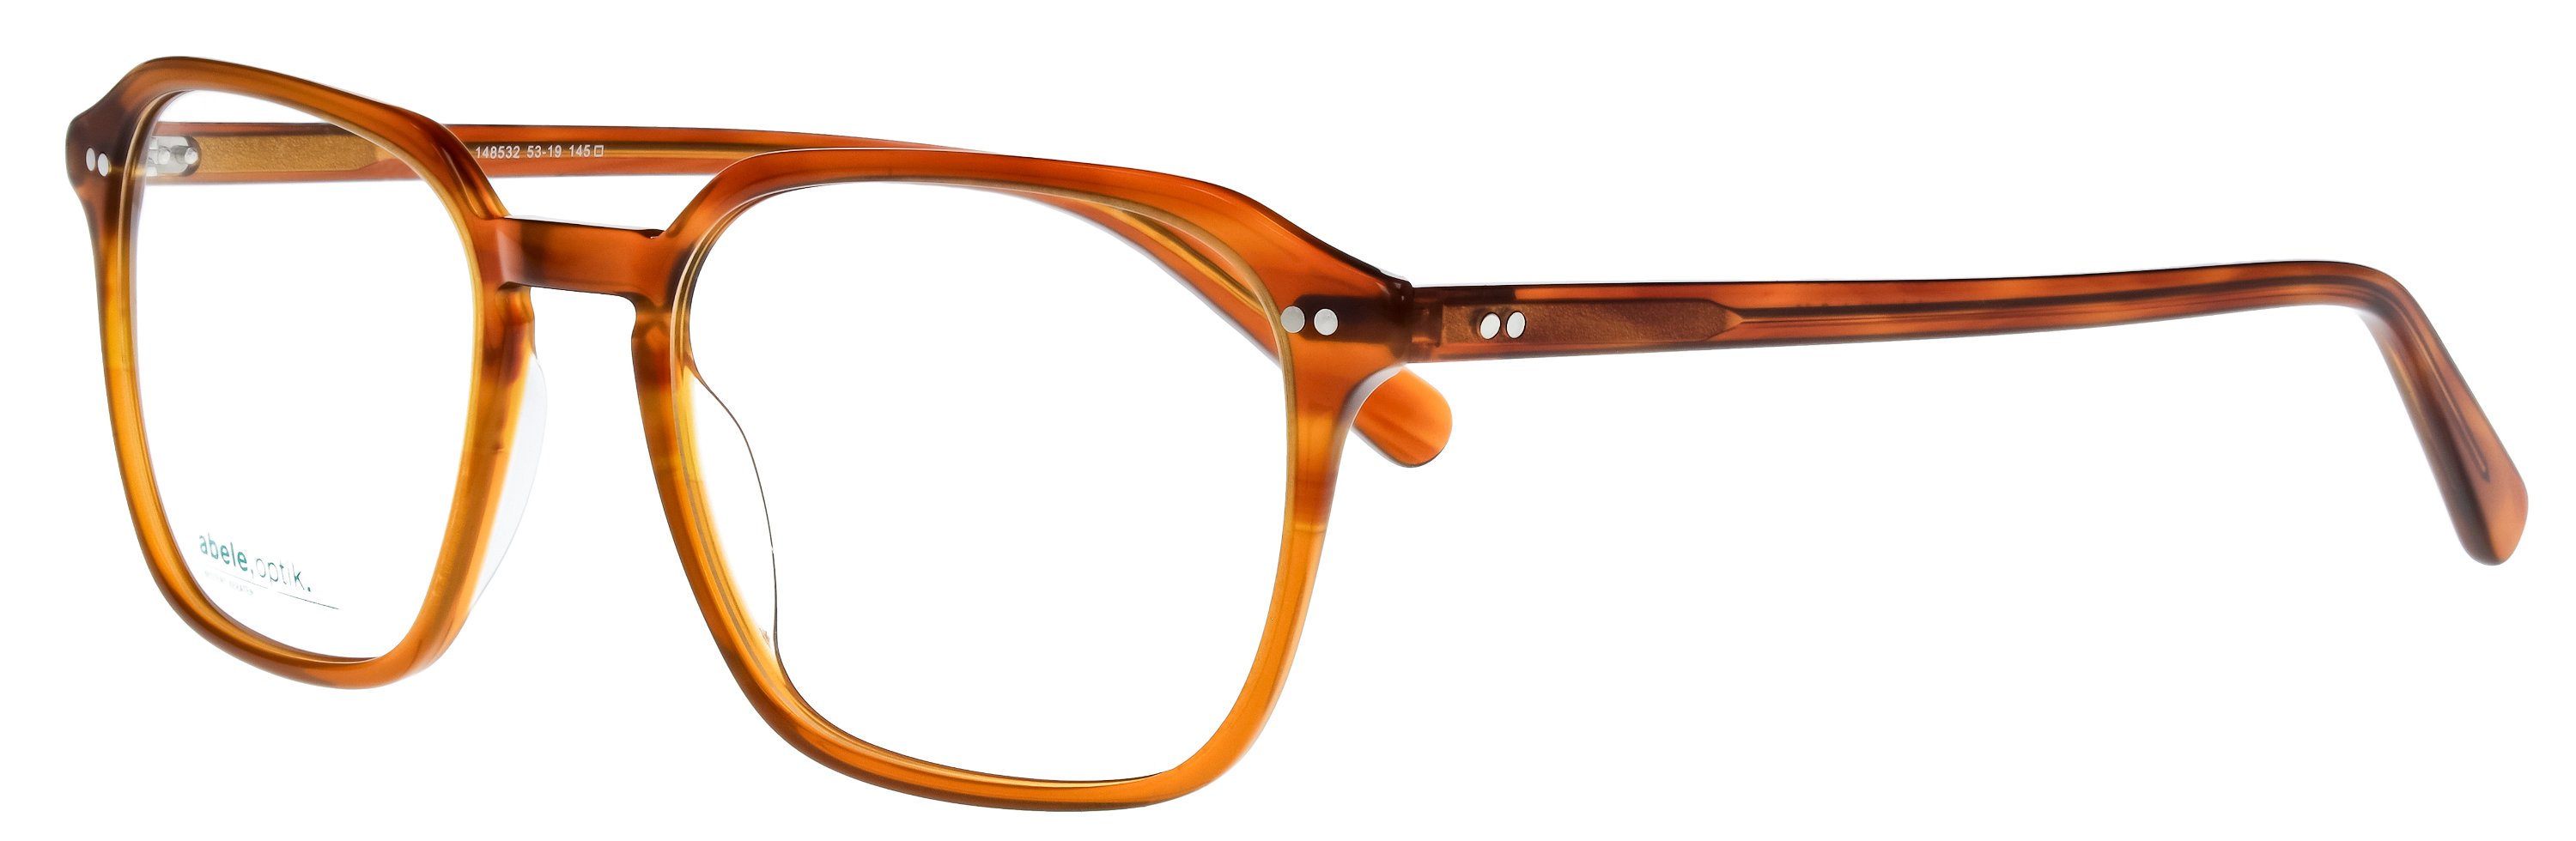 Das Bild zeigt die Korrektionsbrille 148532 von der Marke Abele Optik in karamellbraun.